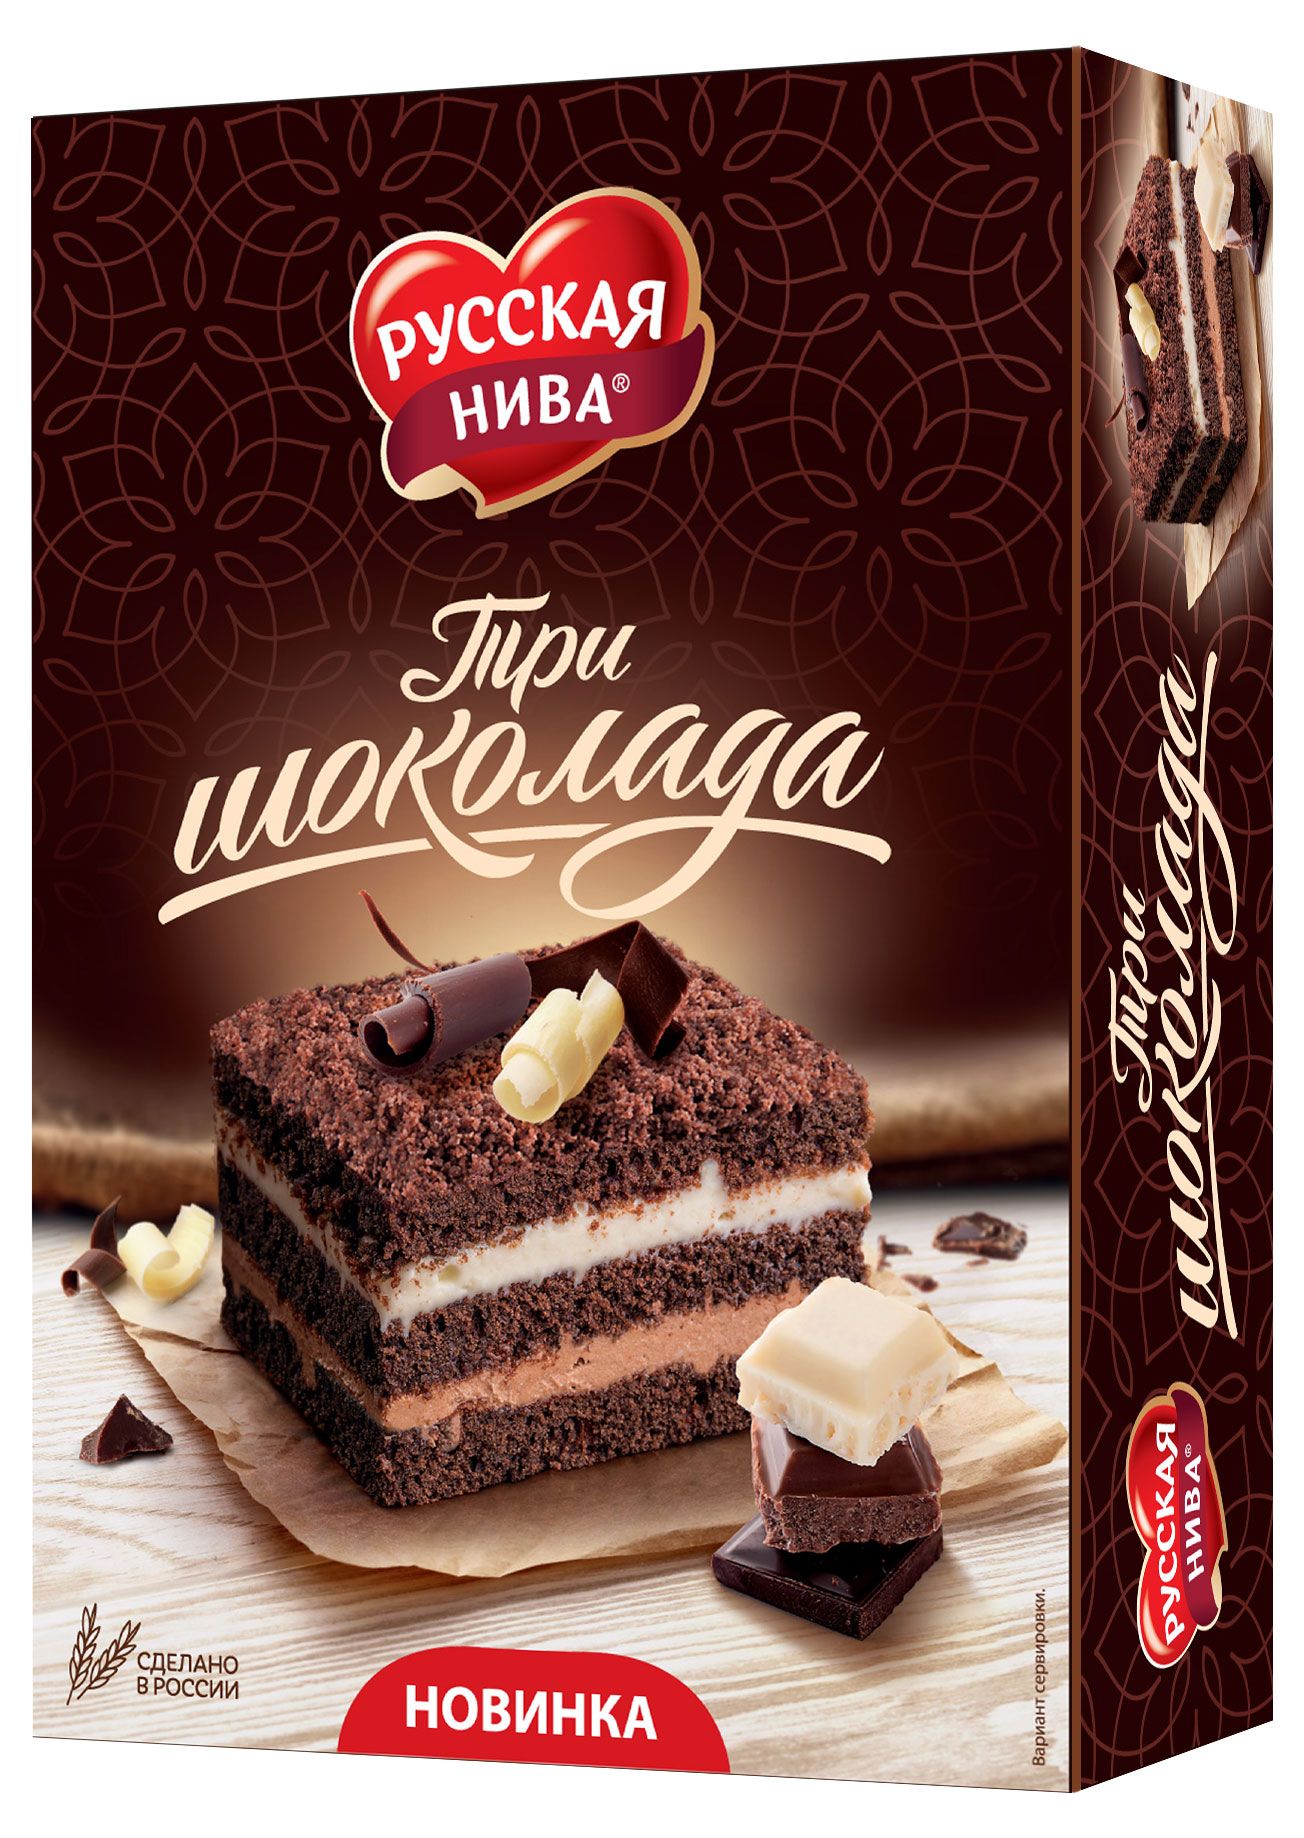 Три шоколада отзывы. Торт русская Нива три шоколада, 400 г. Тортики русская Нива. Мирель 3 шоколада. Торт 3 шоколада русская Нива.